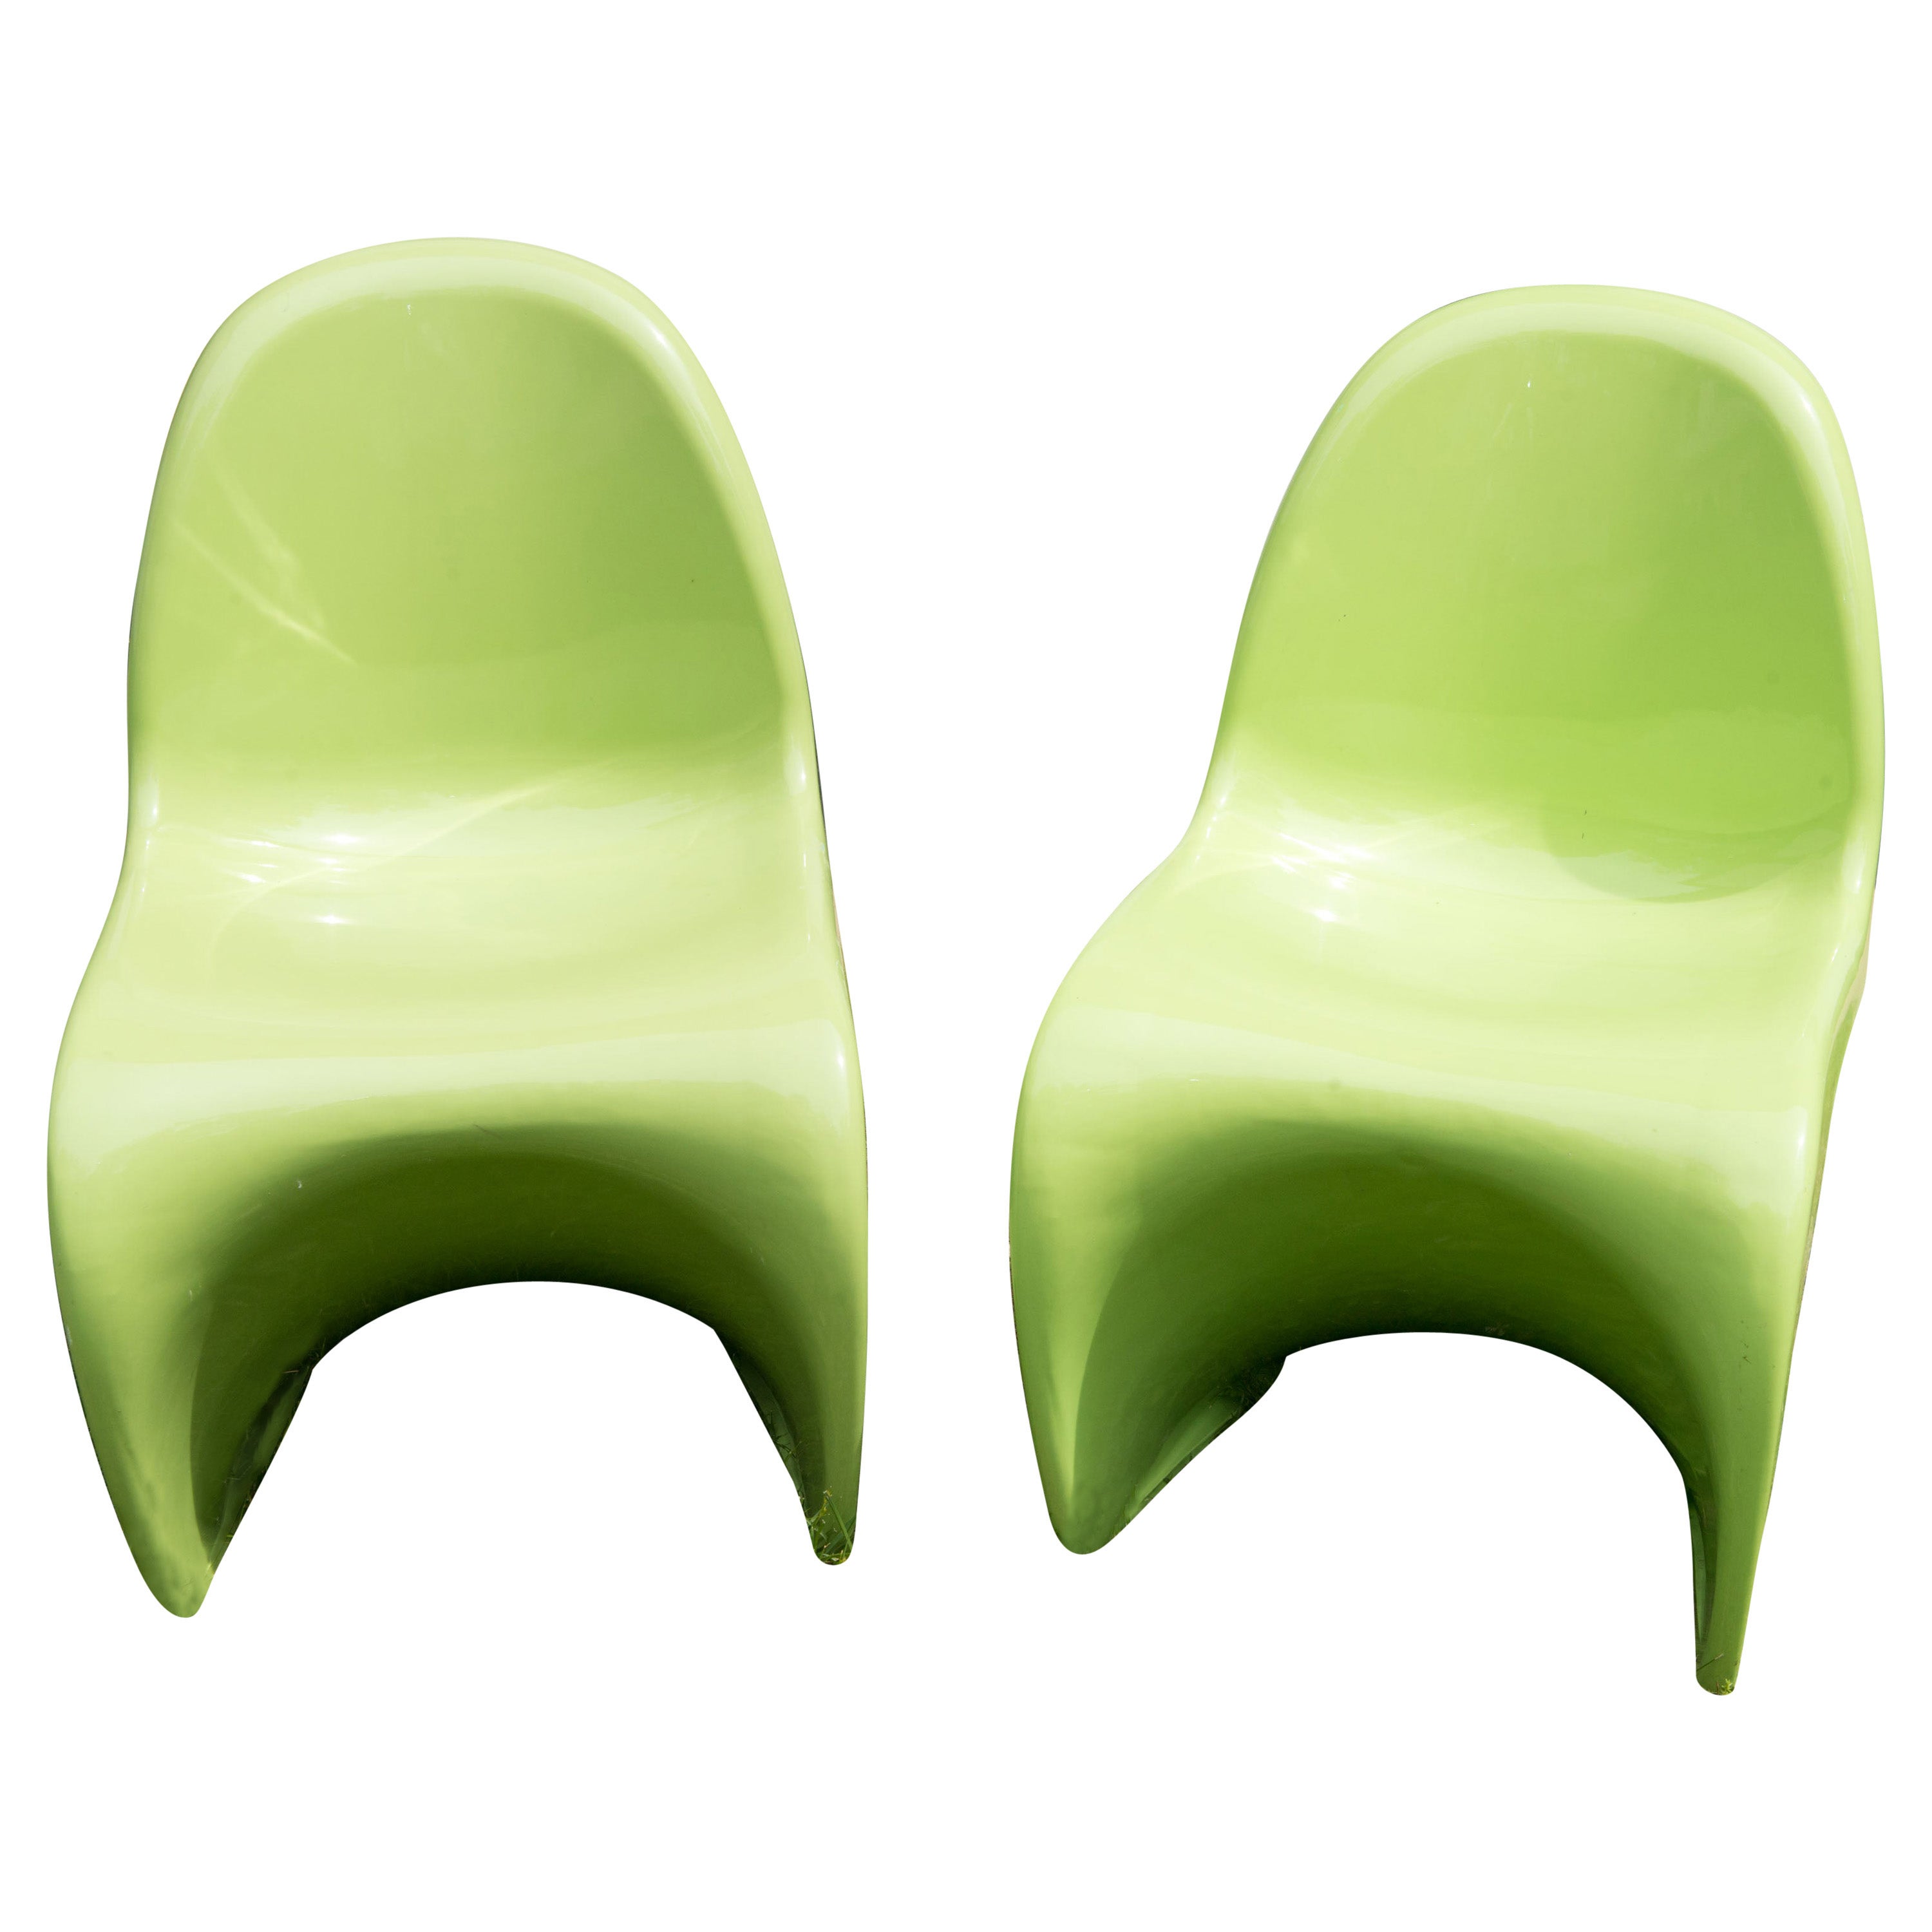 Paire de chaises classiques Panton en vert citron